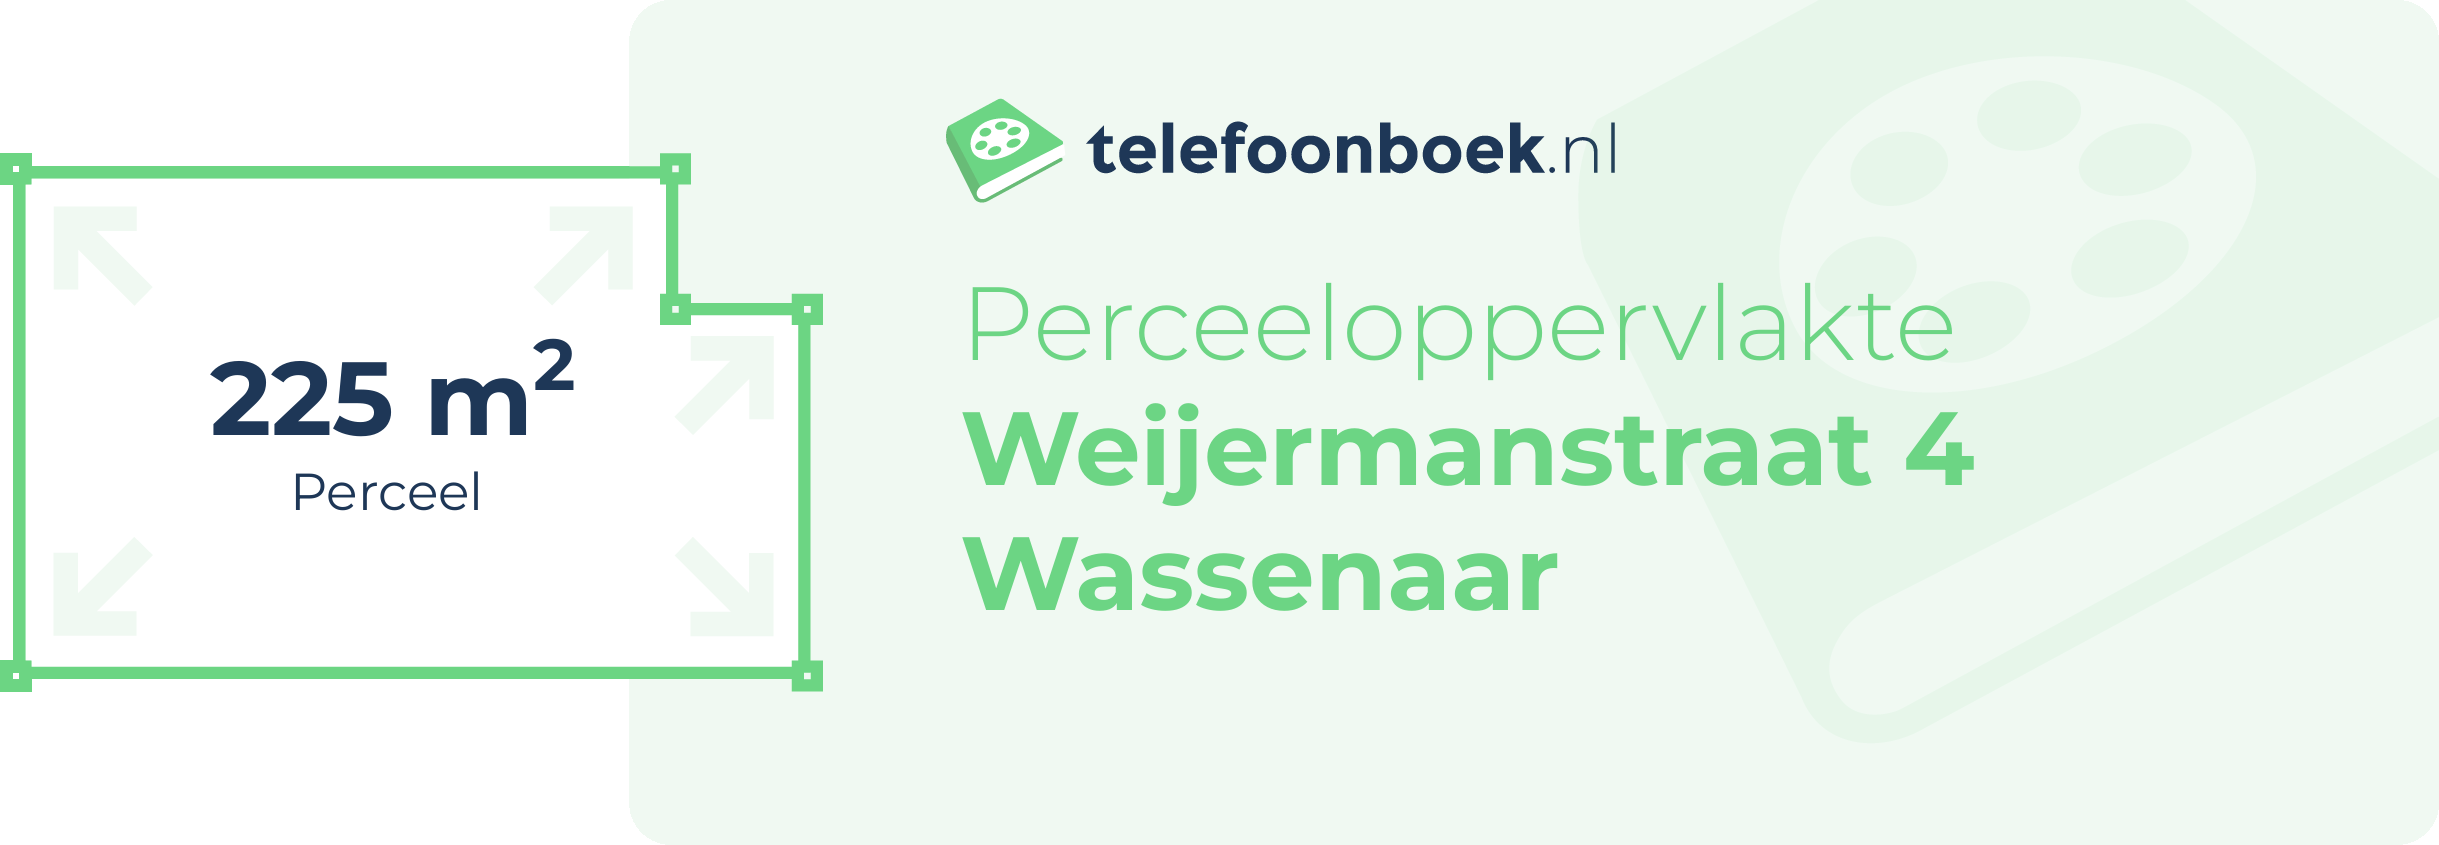 Perceeloppervlakte Weijermanstraat 4 Wassenaar